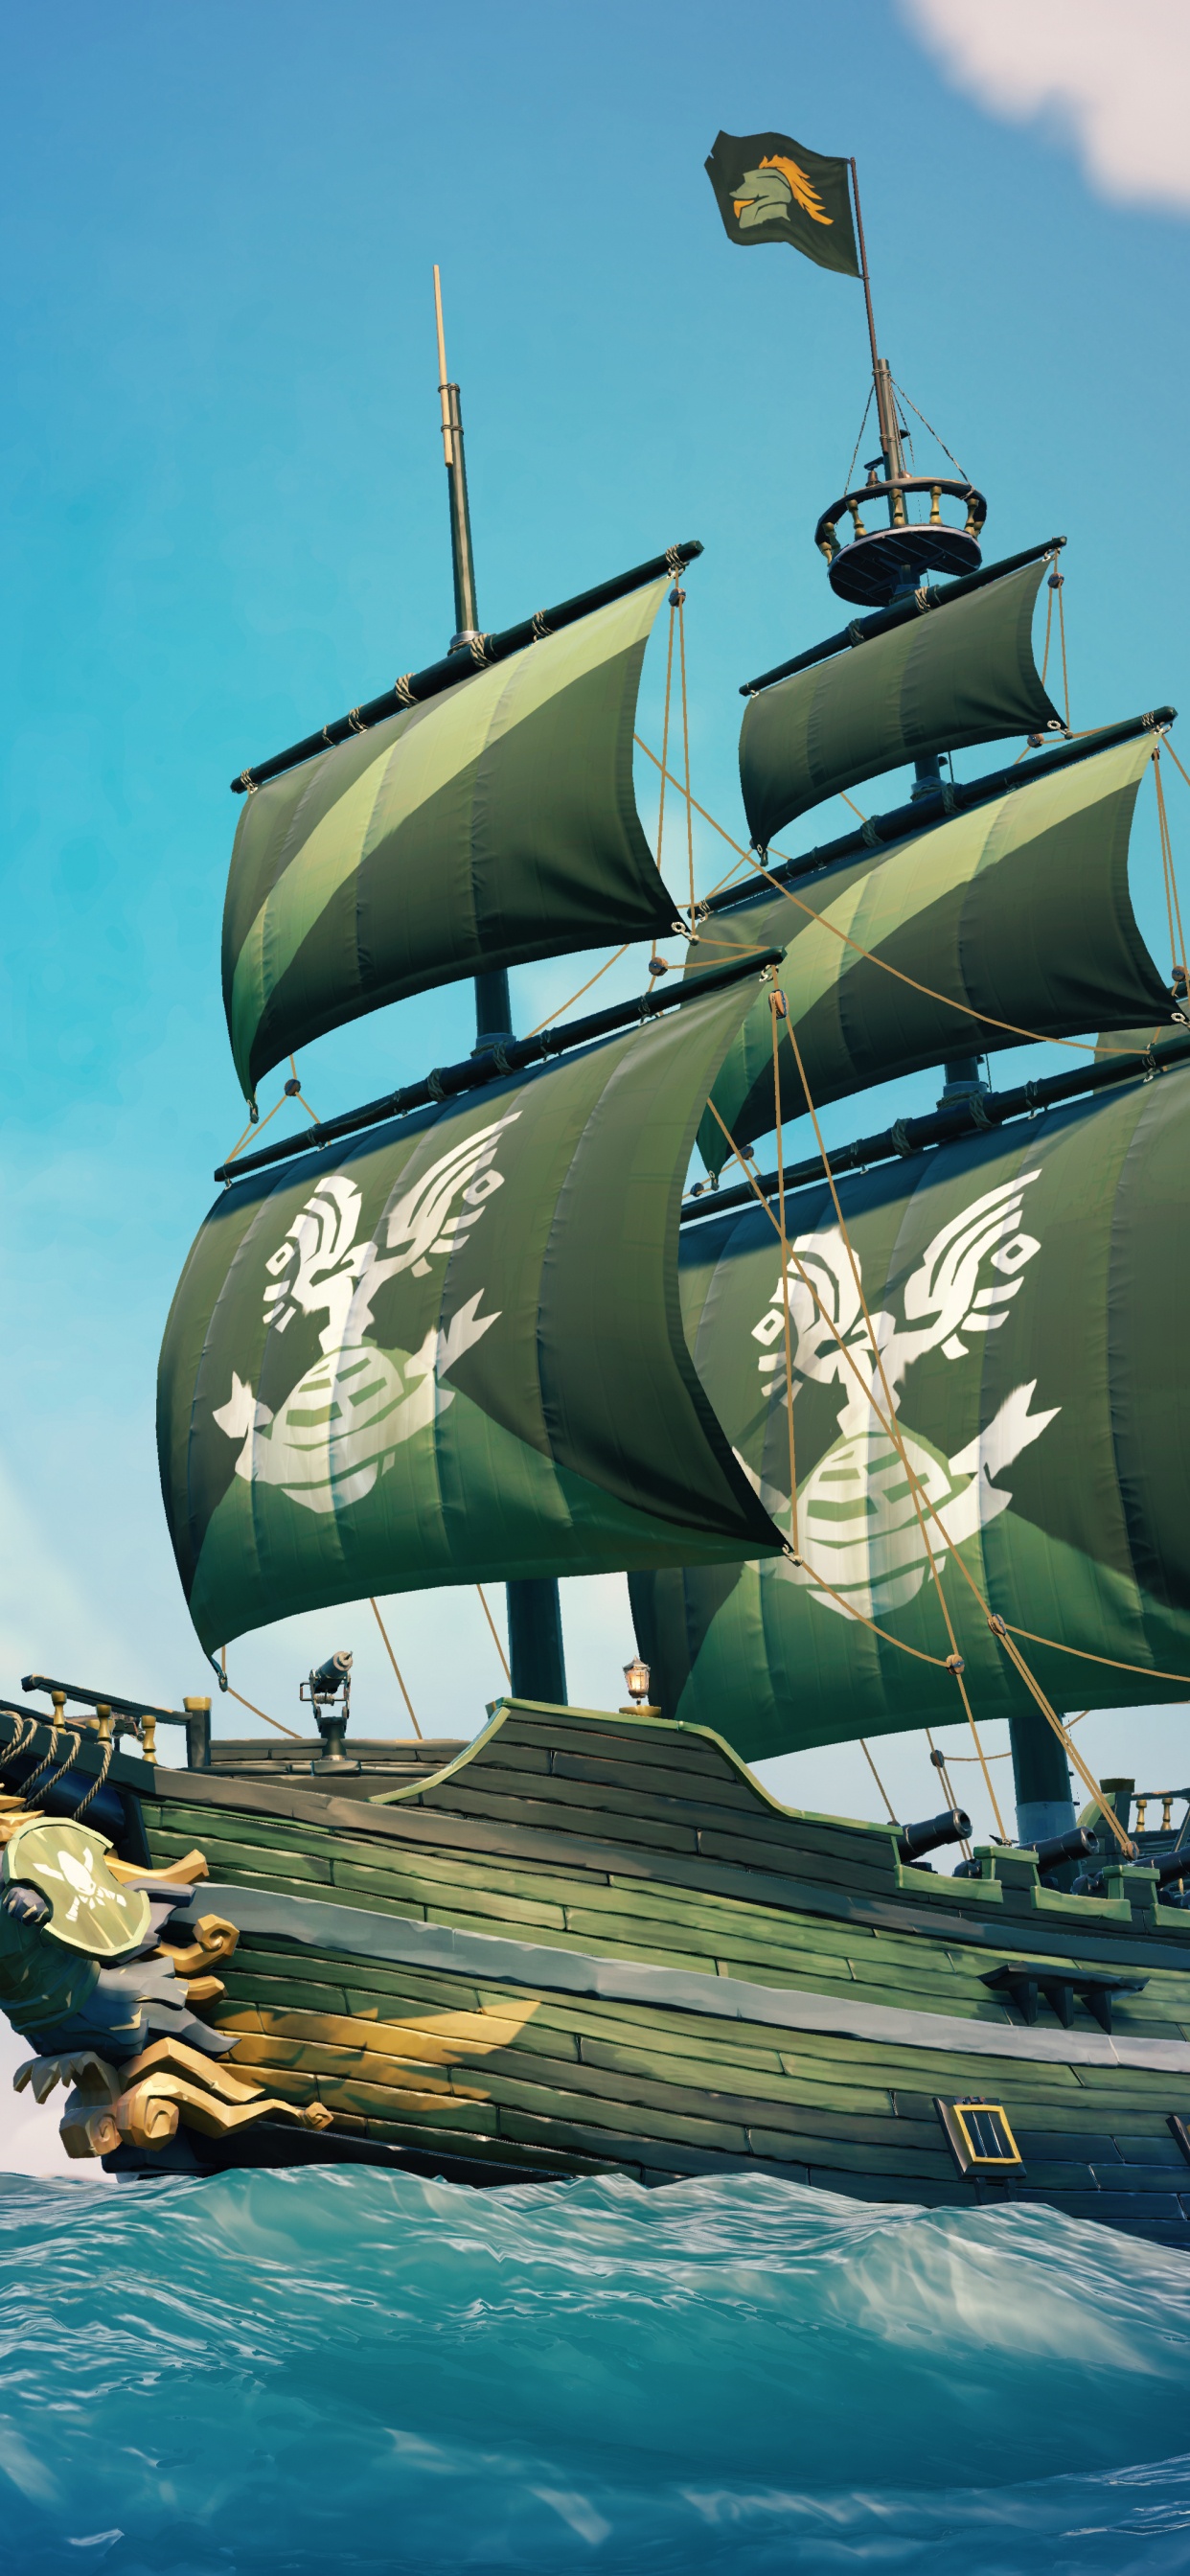 Xbox游戏室, 马尼拉大帆船, 船只, Fluyt, 旗舰 壁纸 1242x2688 允许